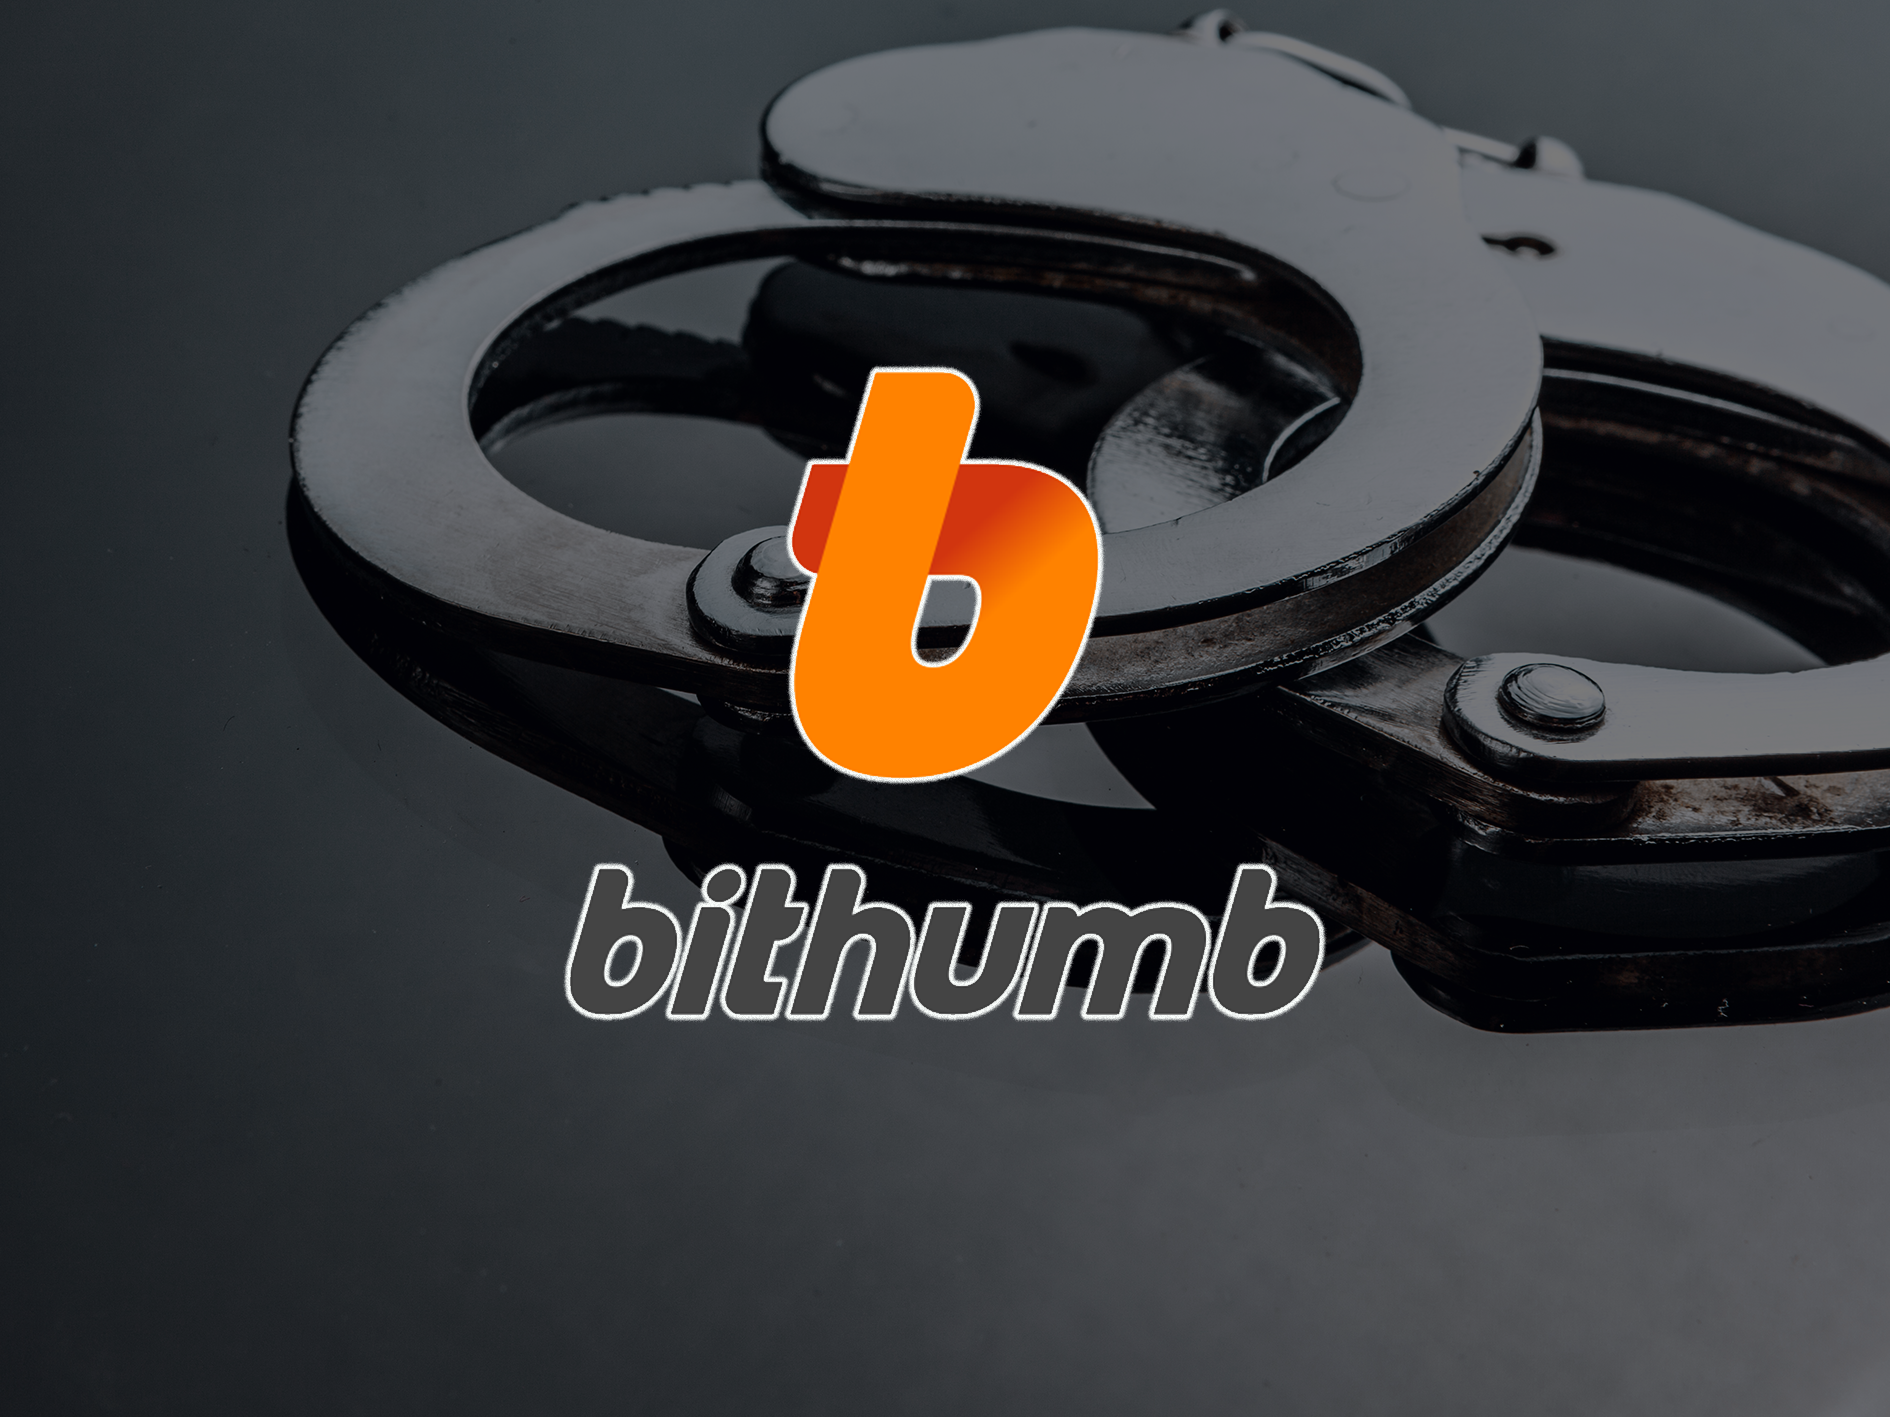 Korea Południowa aresztowała szefa giełdy kryptowalut Bithumb za domniemane defraudacje